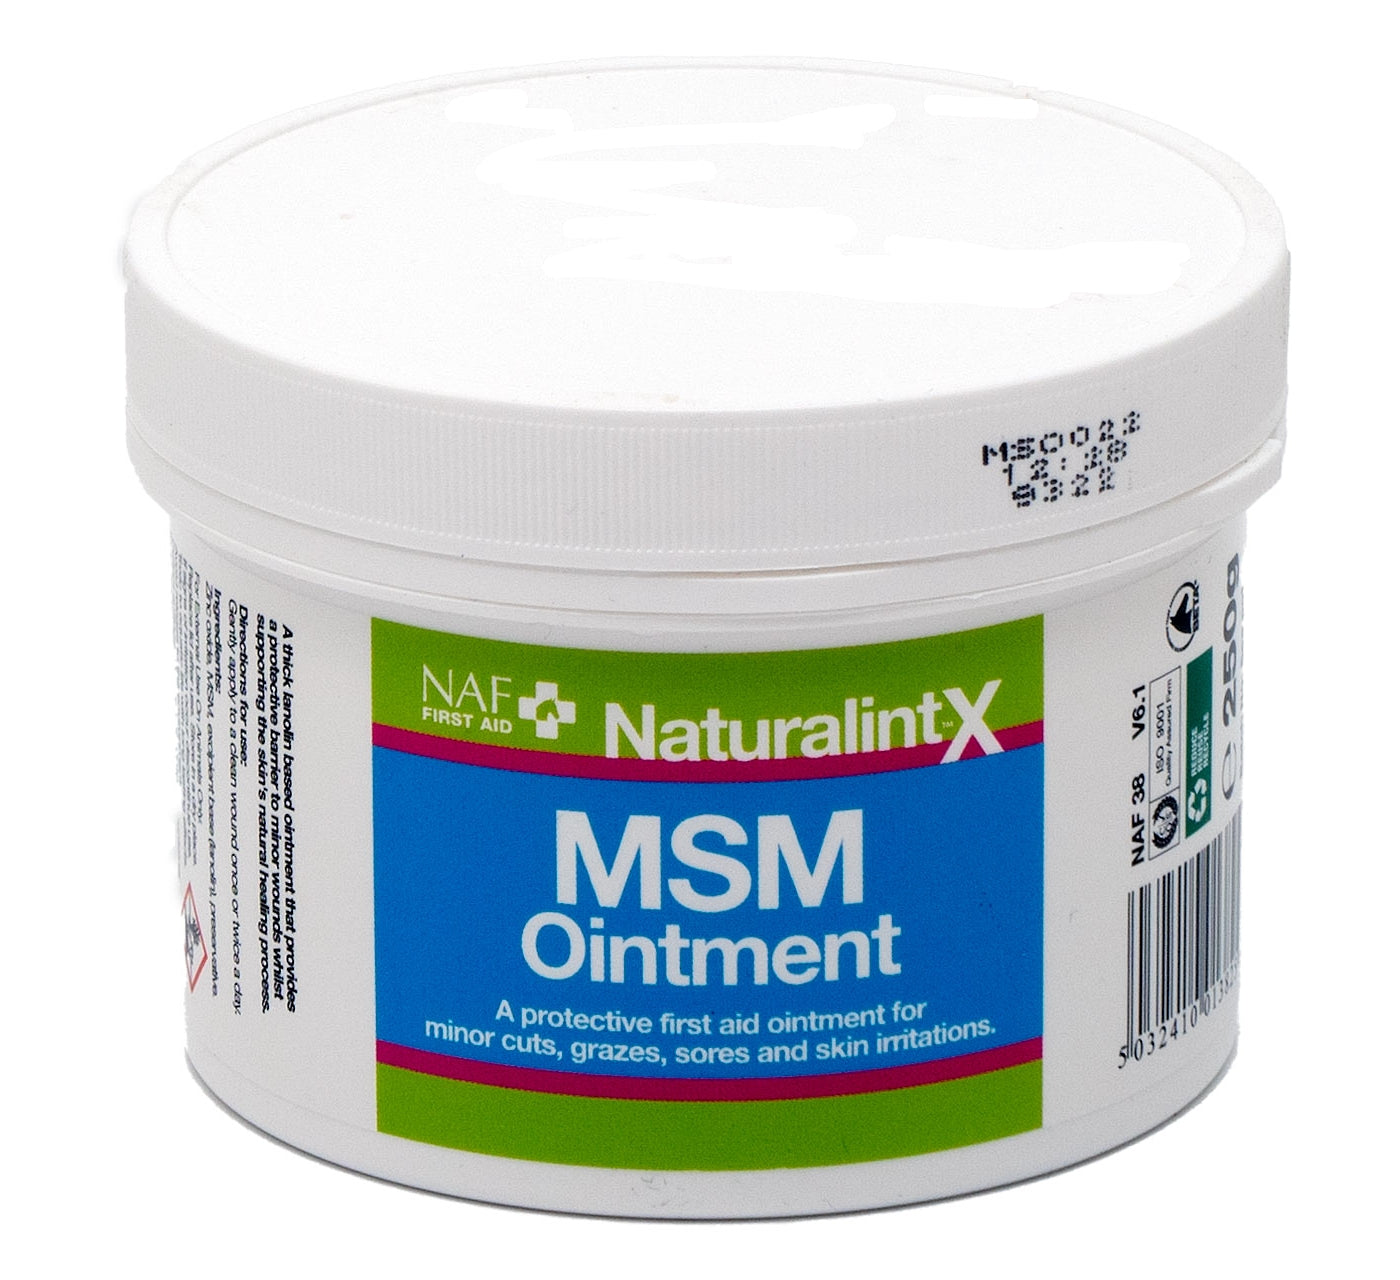 NAF NaturalintX - MSM Ointment - 250g